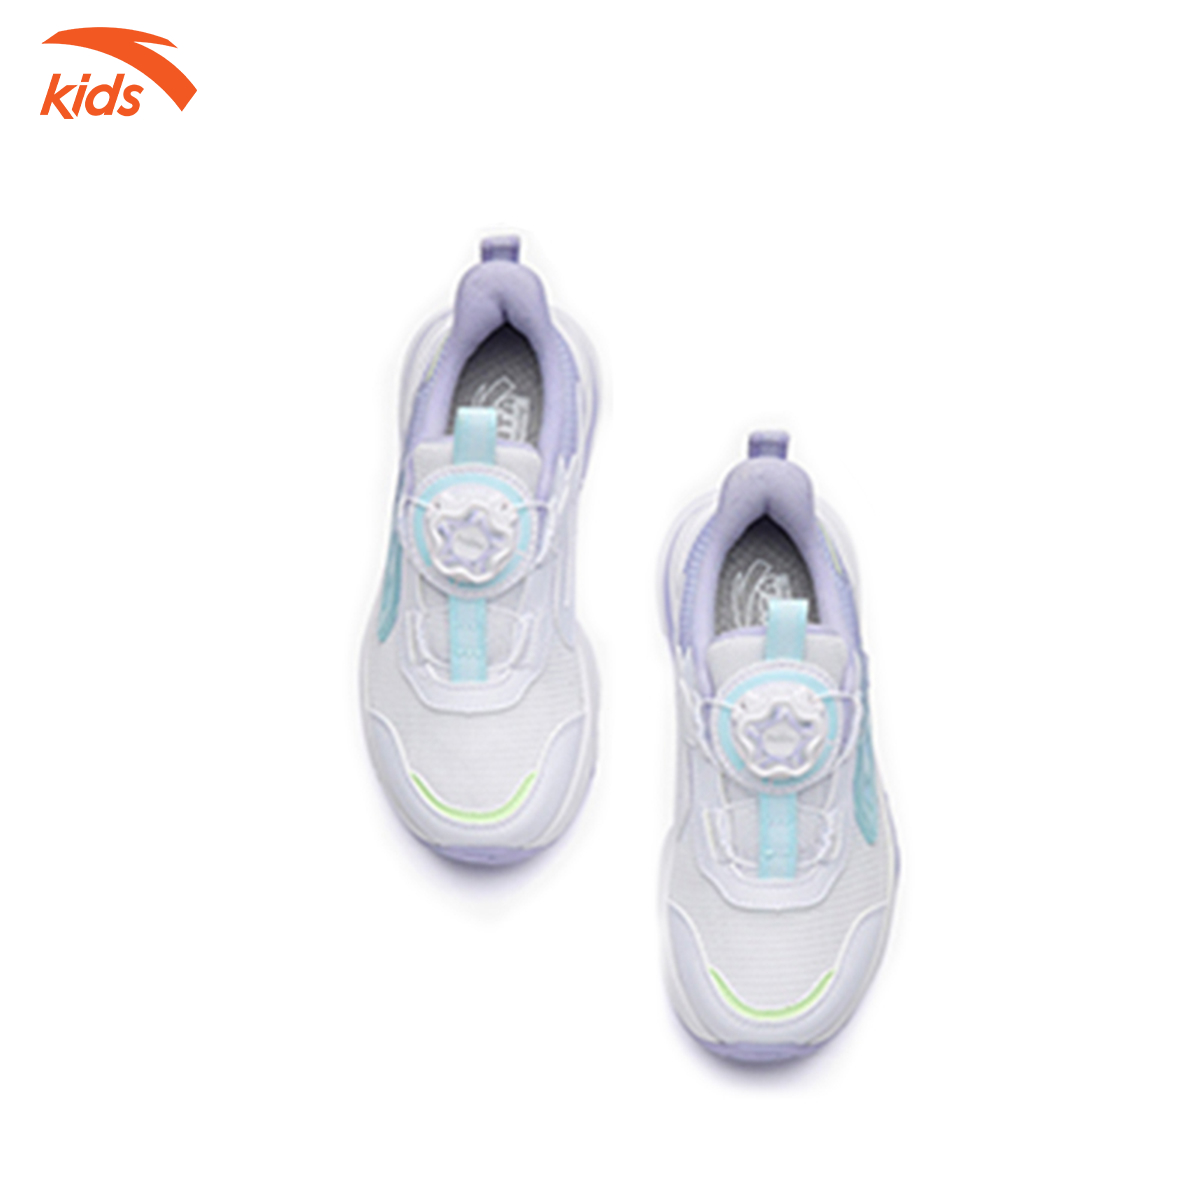 Giày thể thao bé gái Anta Kids, dòng chạy, thiết kế khóa habu tiện lợi, mặt lưới thoáng khí 322239902-1